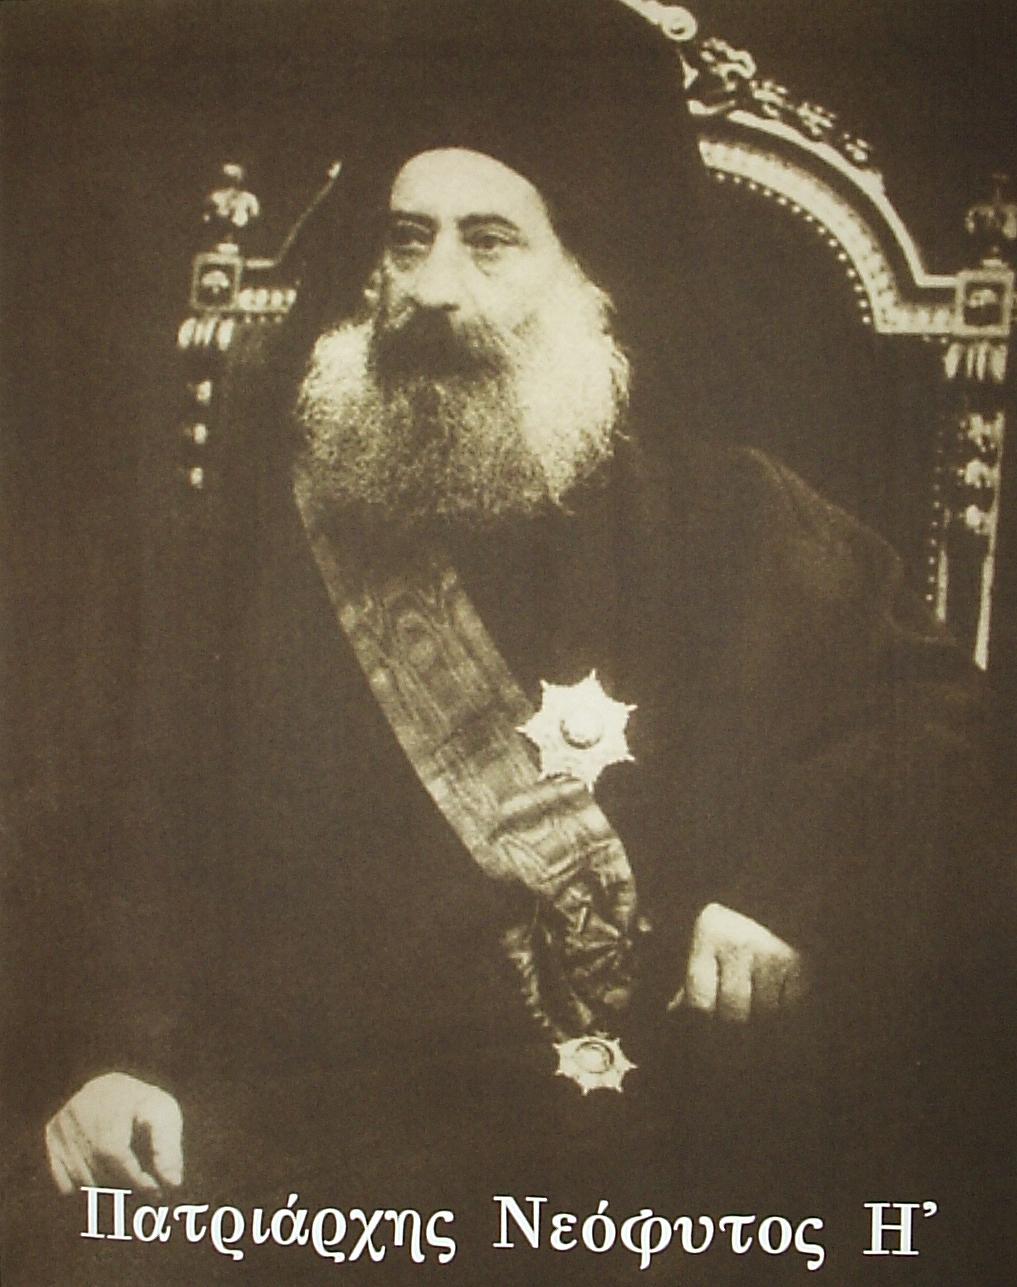 Neophytos VIII (born Joakim Papakonstantinou1832-1909) was Patriarch of Constantinople from 1891 to 1894.